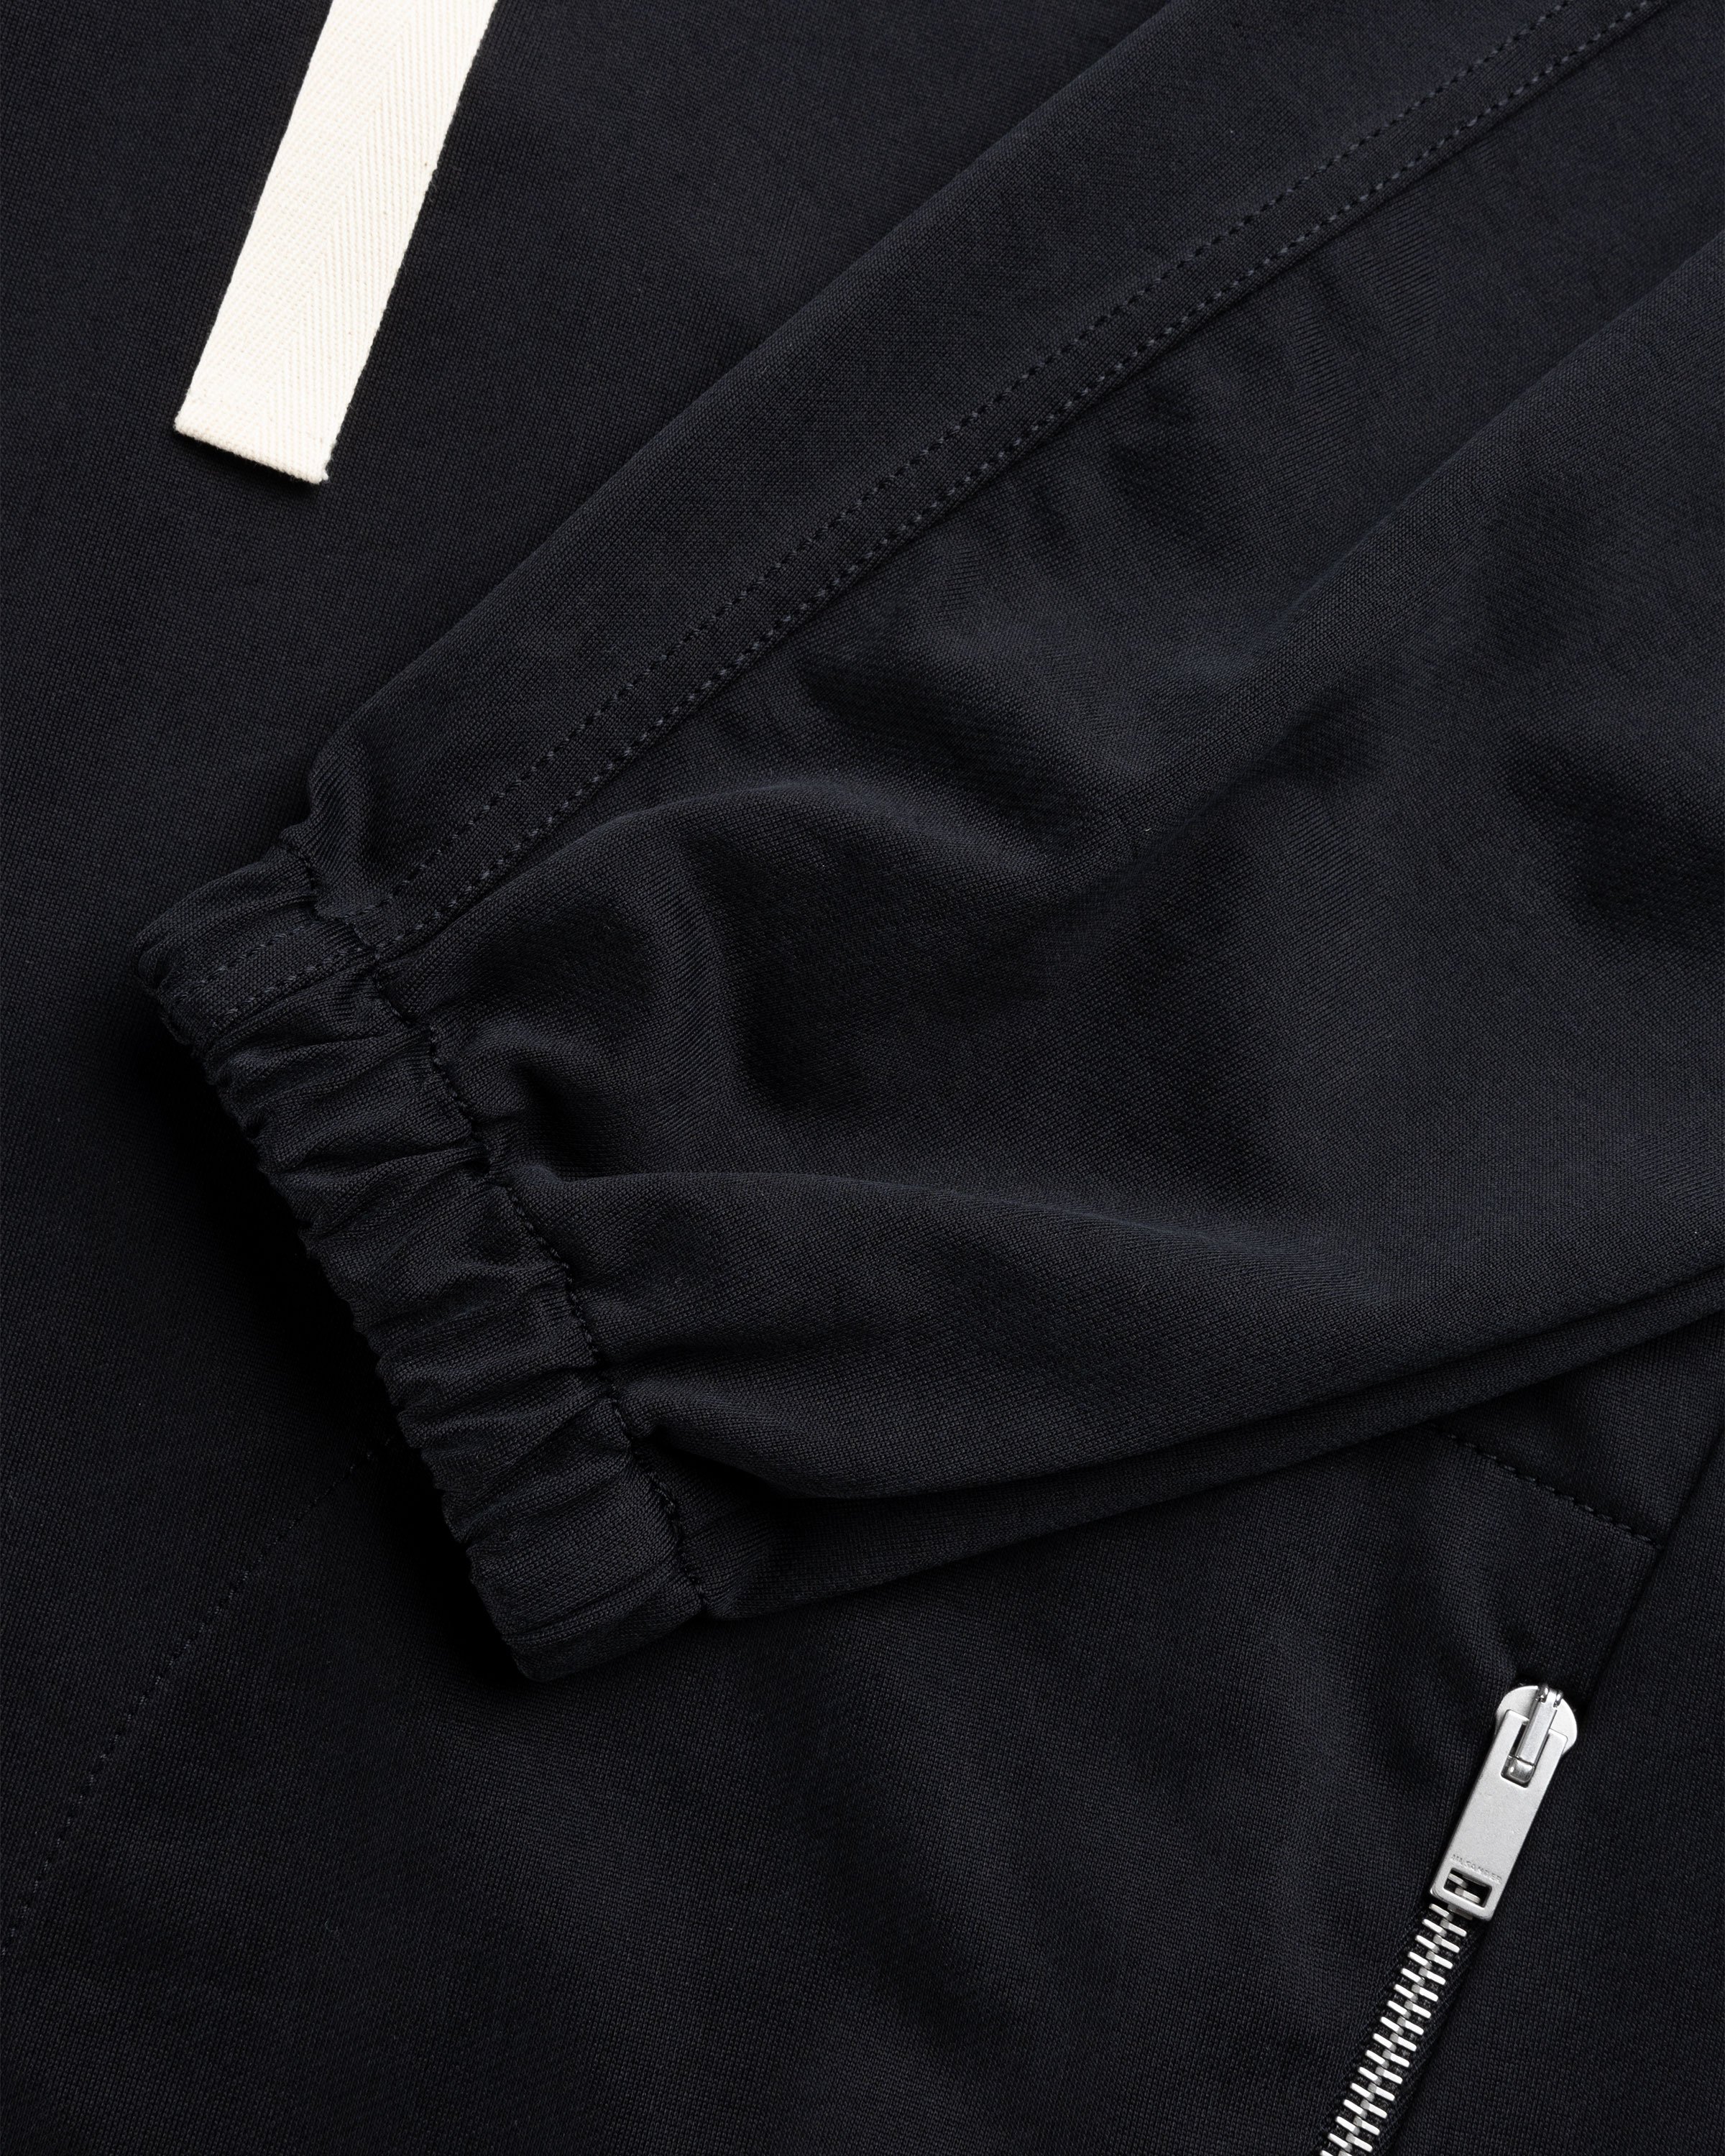 Jil Sander - Hooded Sweatshirt Black - Clothing - Black - Image 6